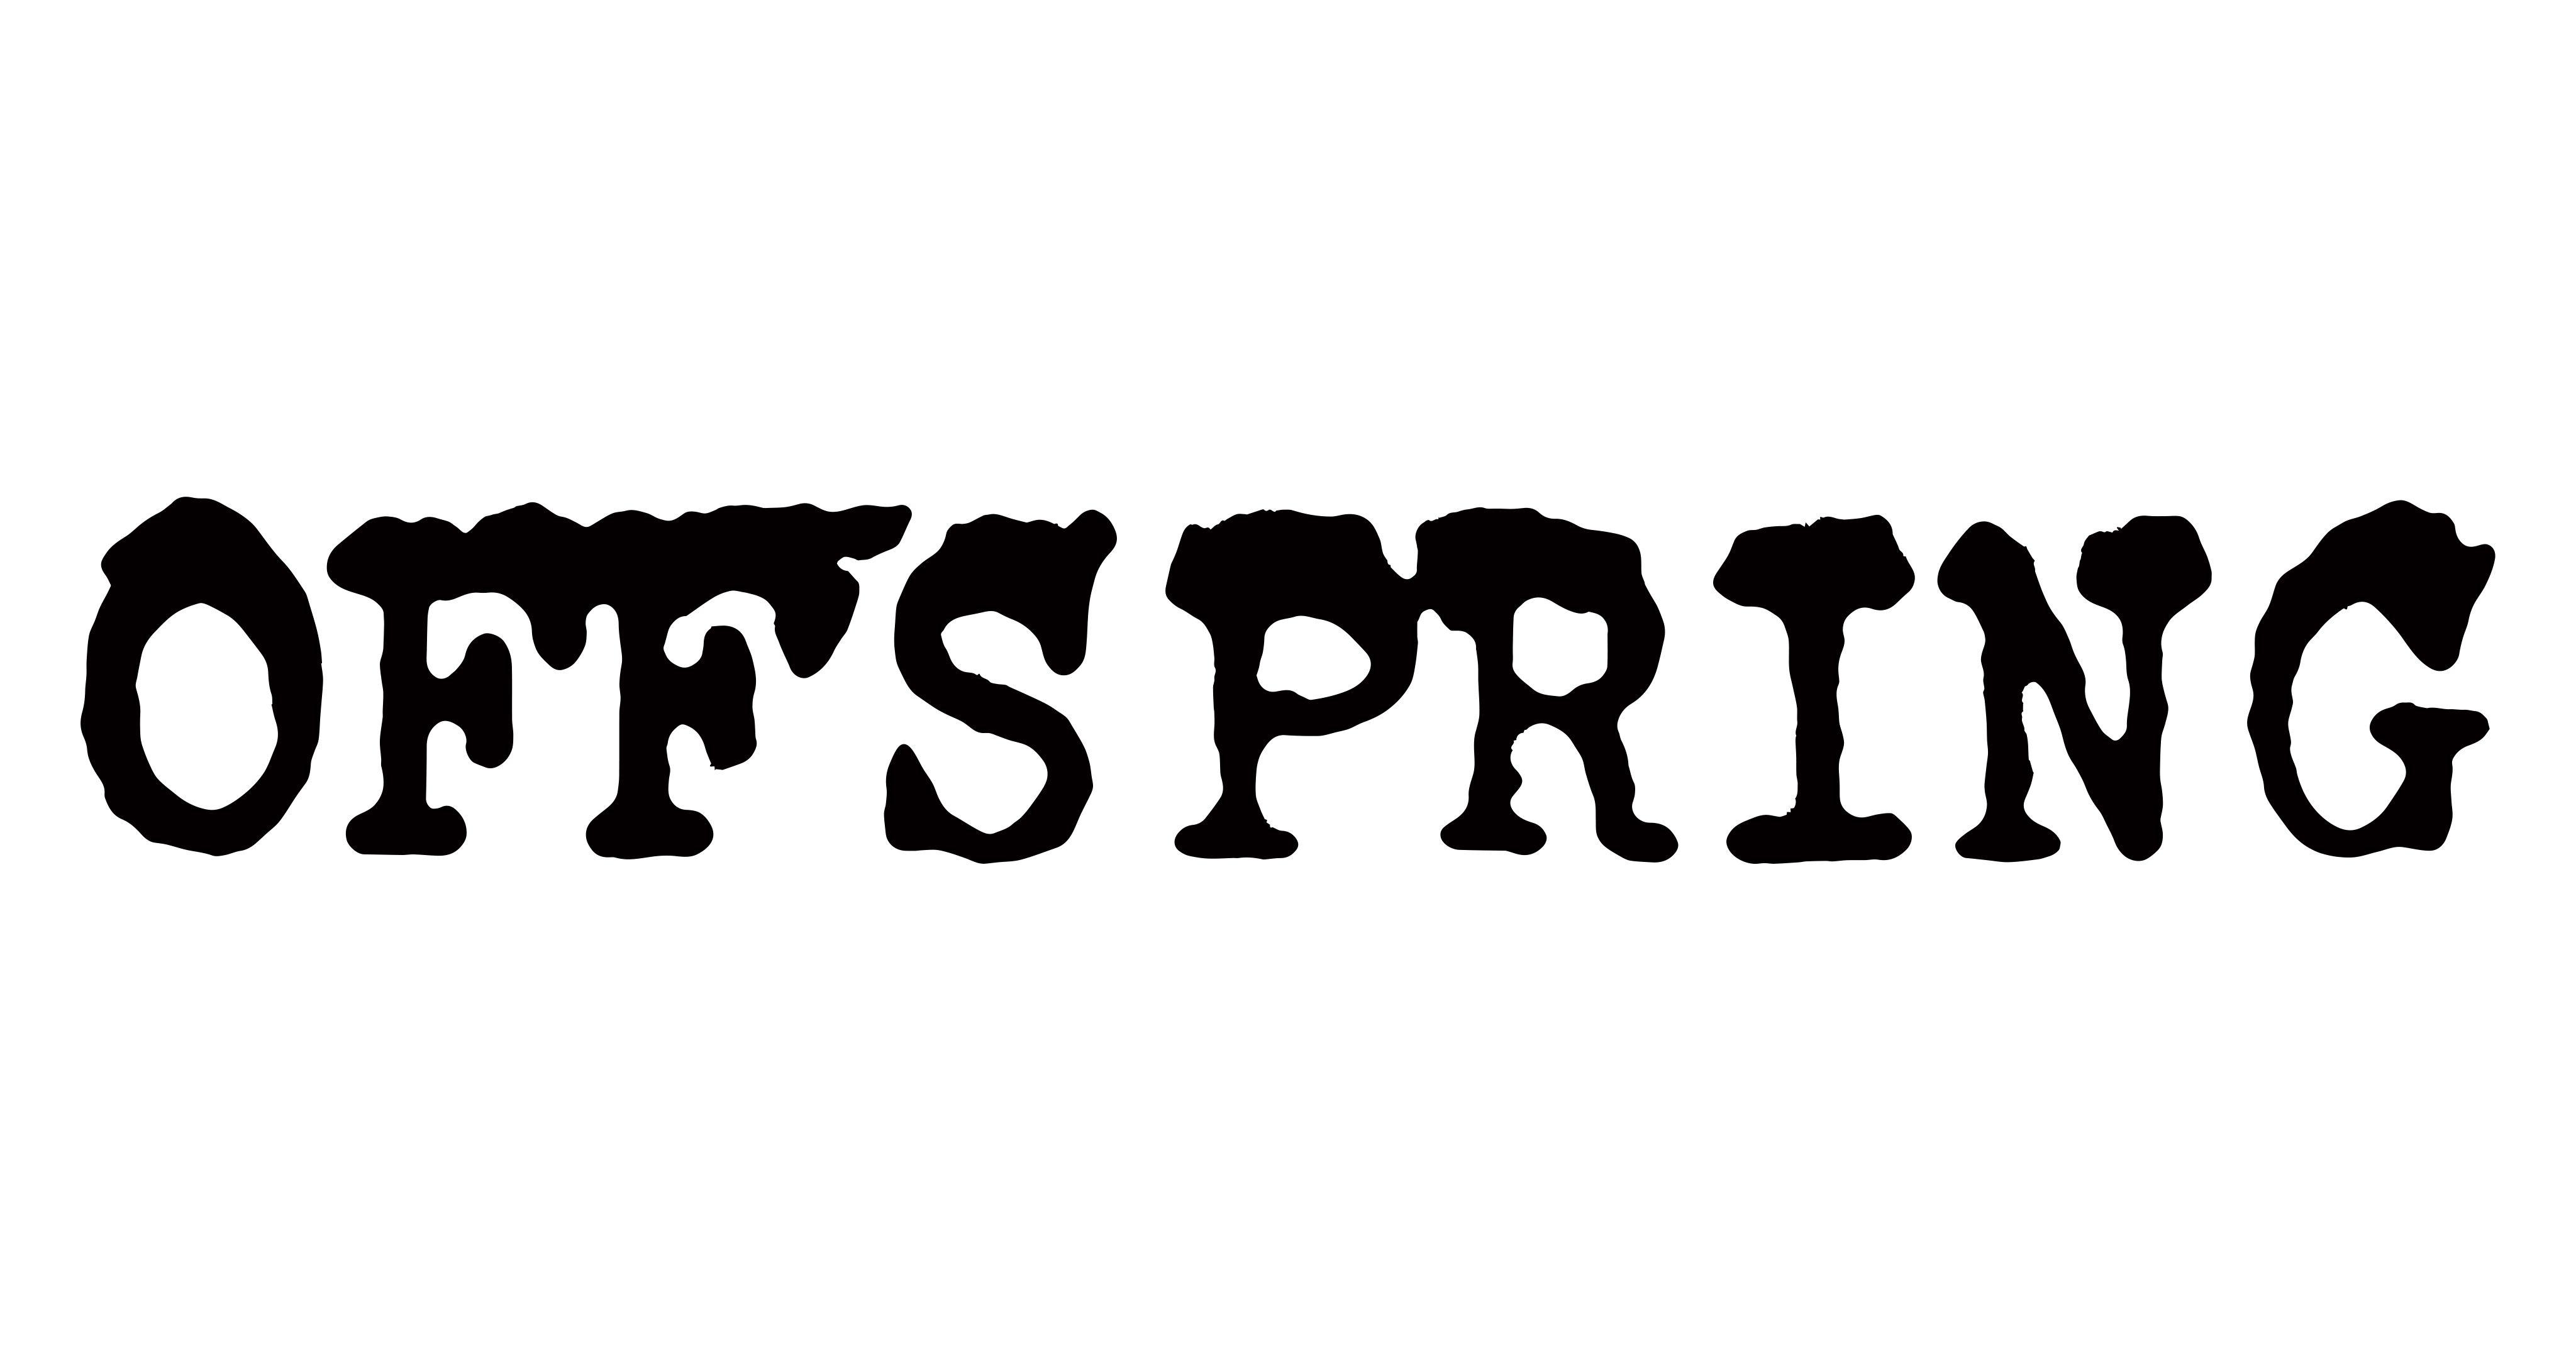 Offspring Logo - The Offspring